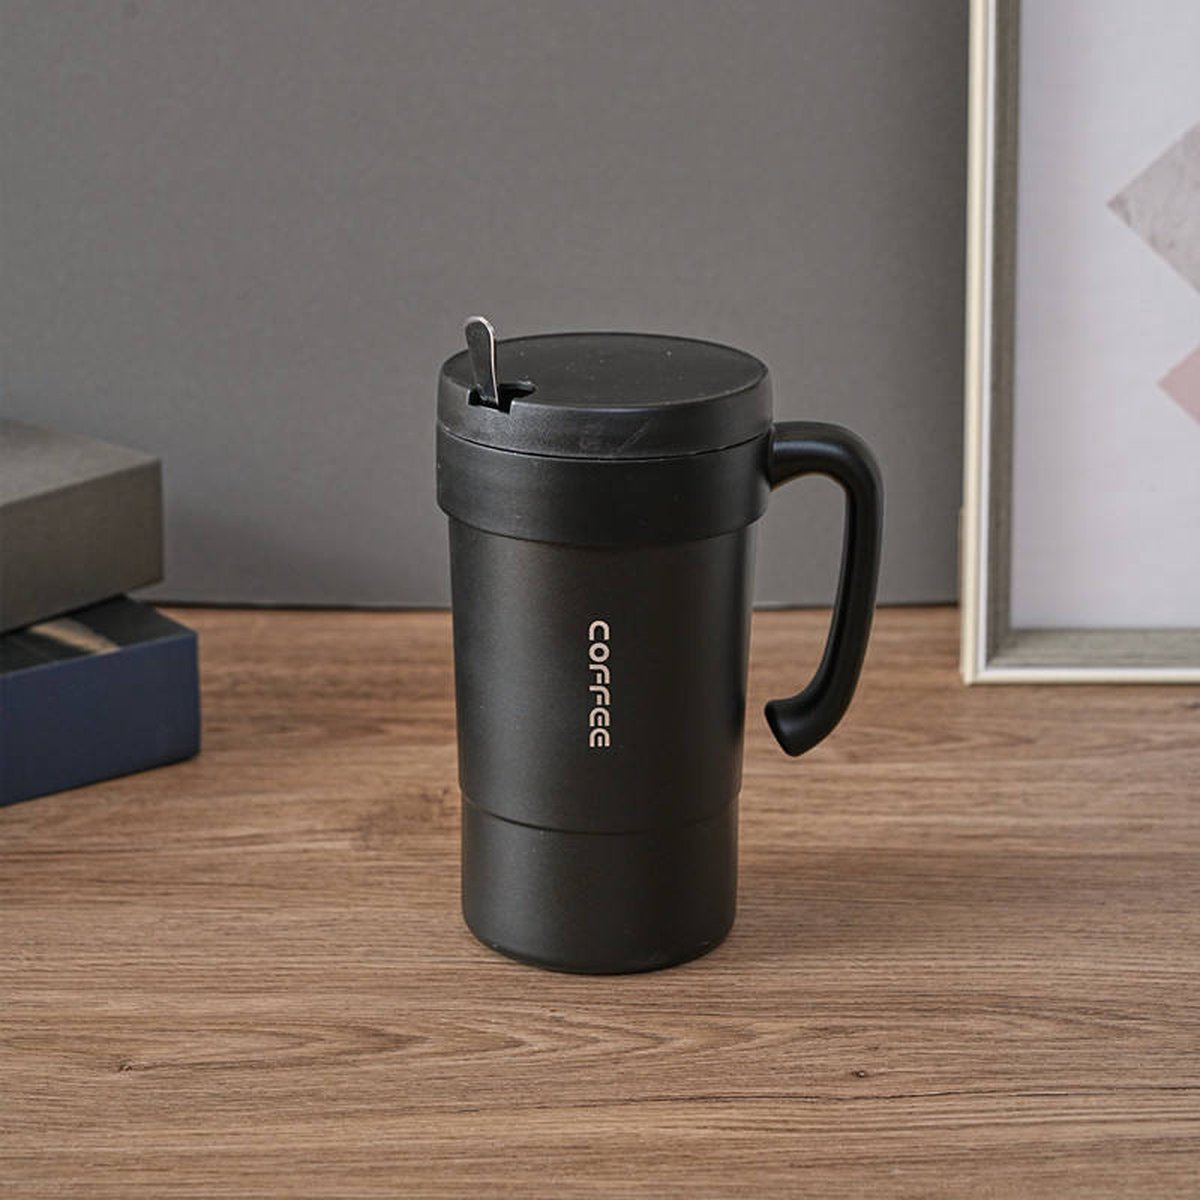 Serwiser Koffie bekker Koffiebeker To Go - Thermosbeker - Theebeker - 600ml - black - met een lepel